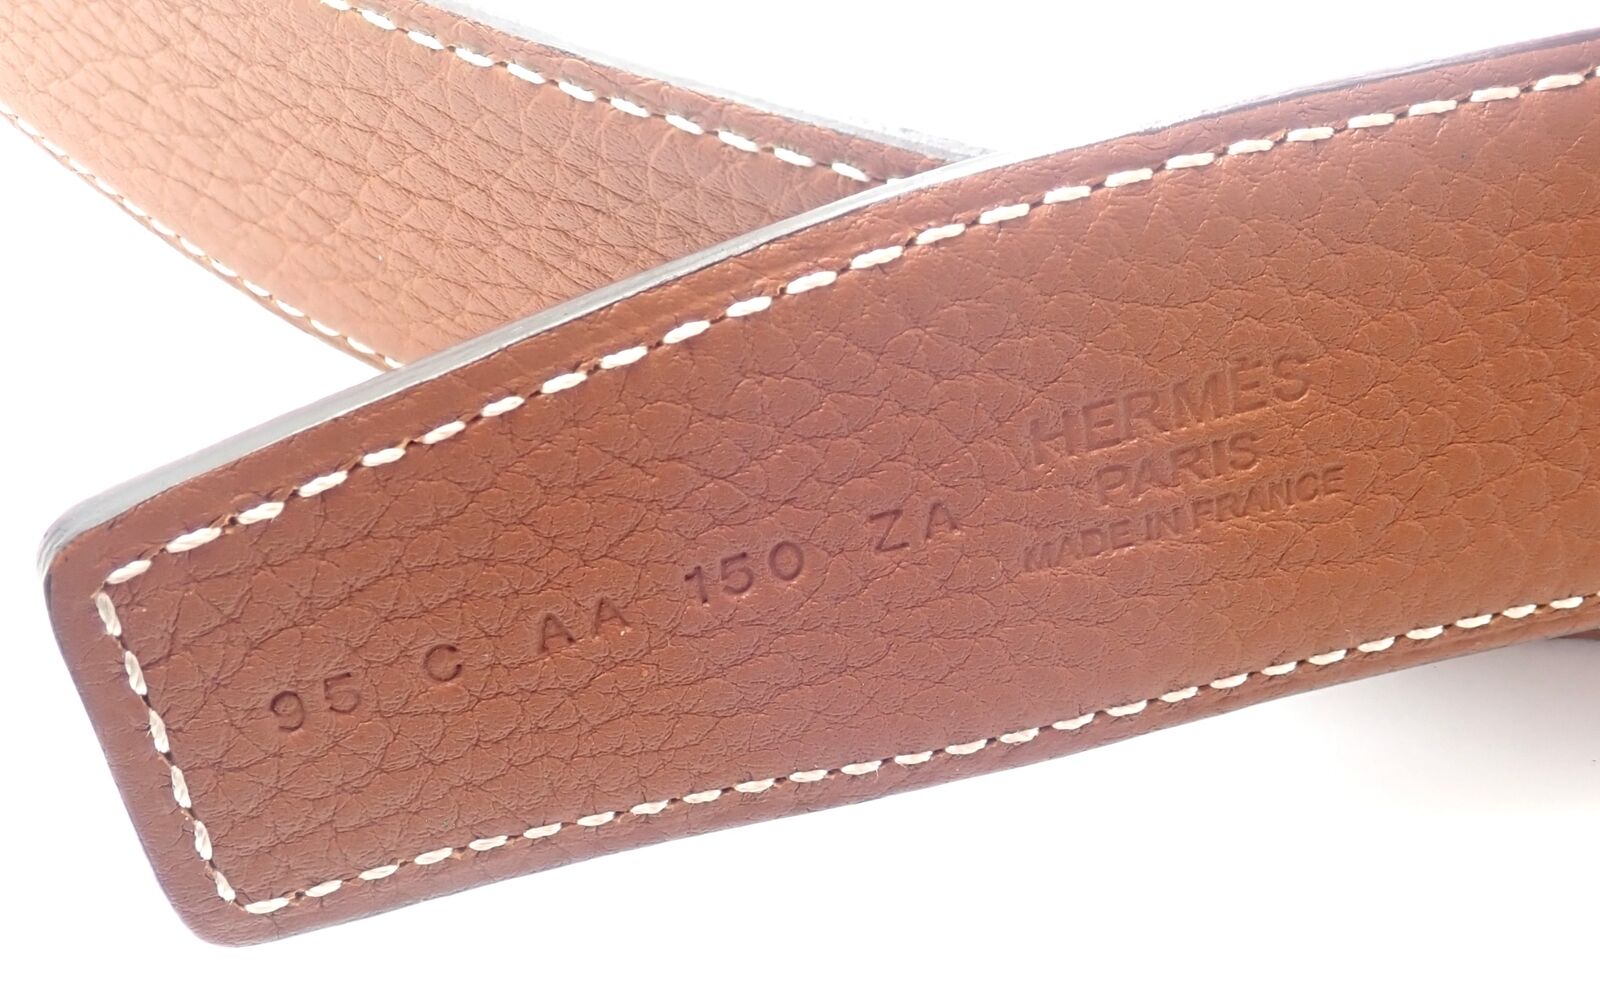 Hermes H Belt: Is It Worth It? - Luxury Belt Review